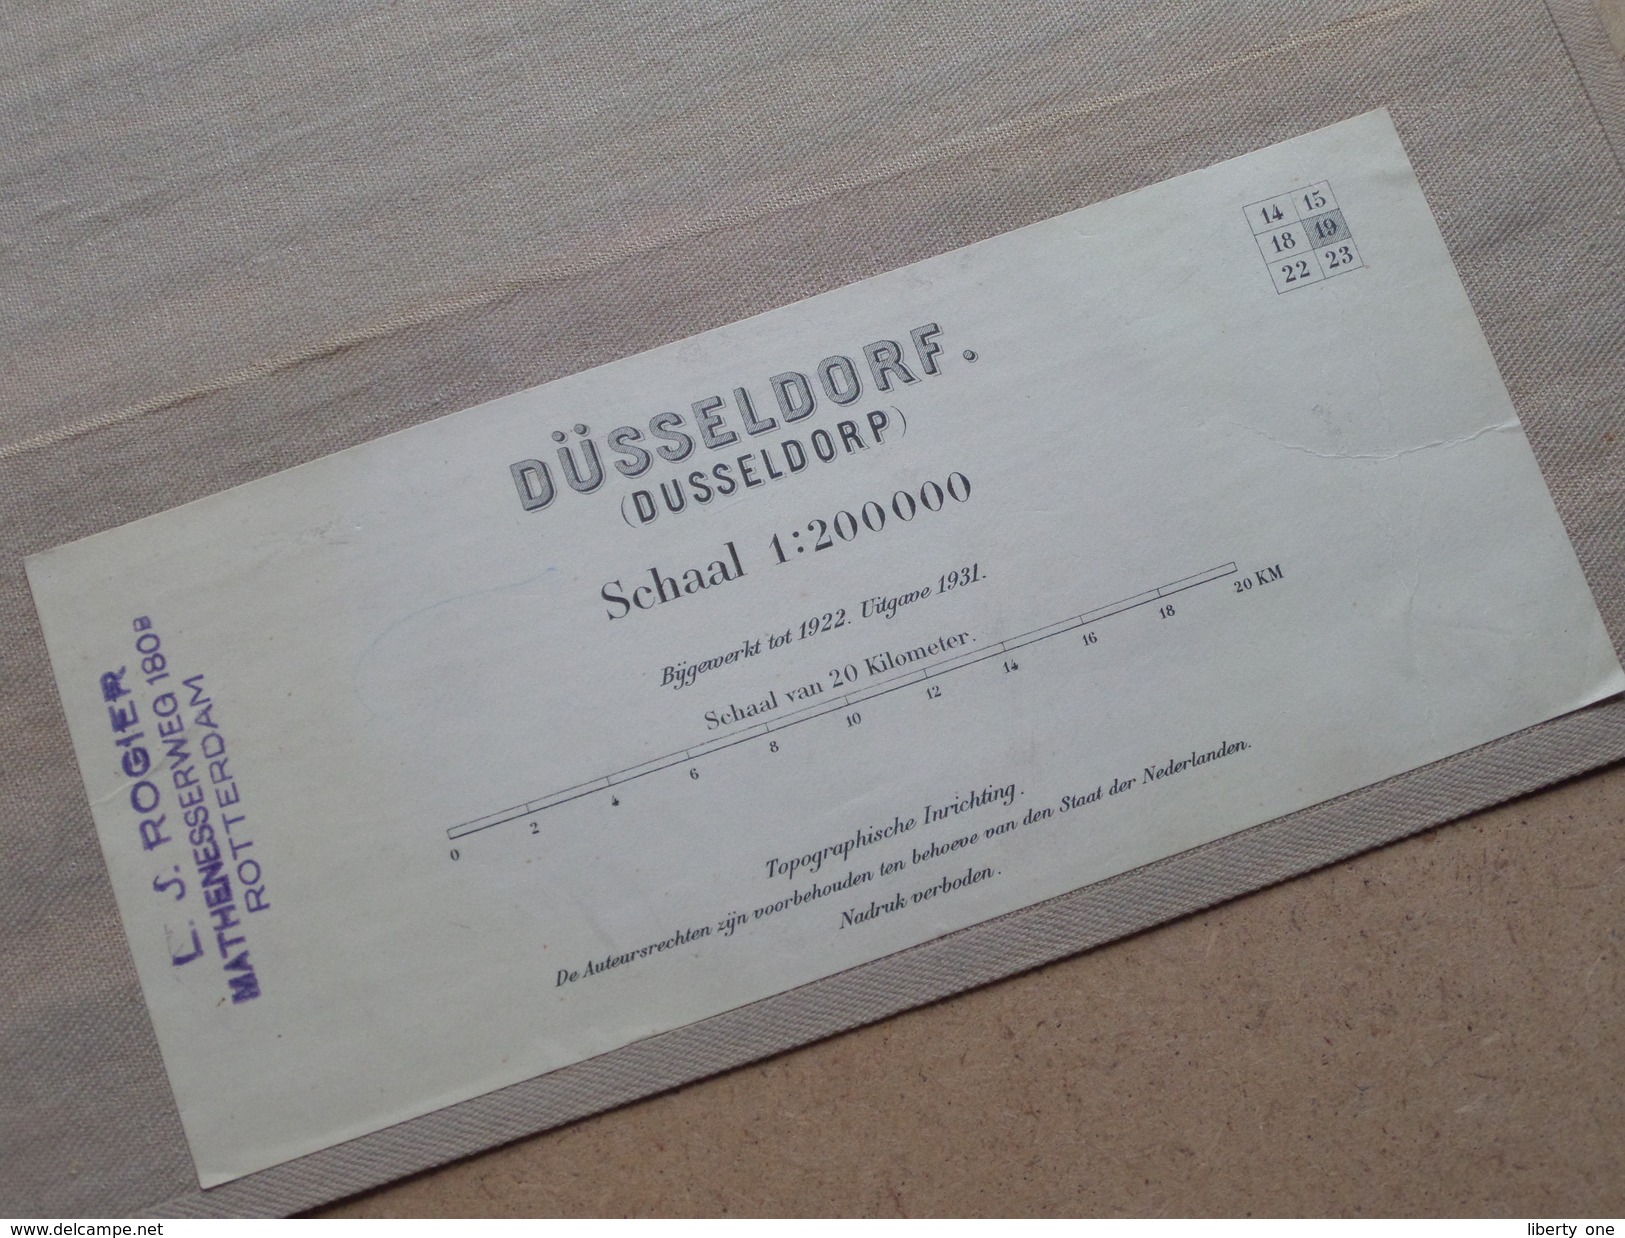 DÜSSELDORF ( Dusseldorp ) Schaal 1:200000 Editie 1931 ( Kaart Op Coton / Katoen / Cotton ) ! - Europe